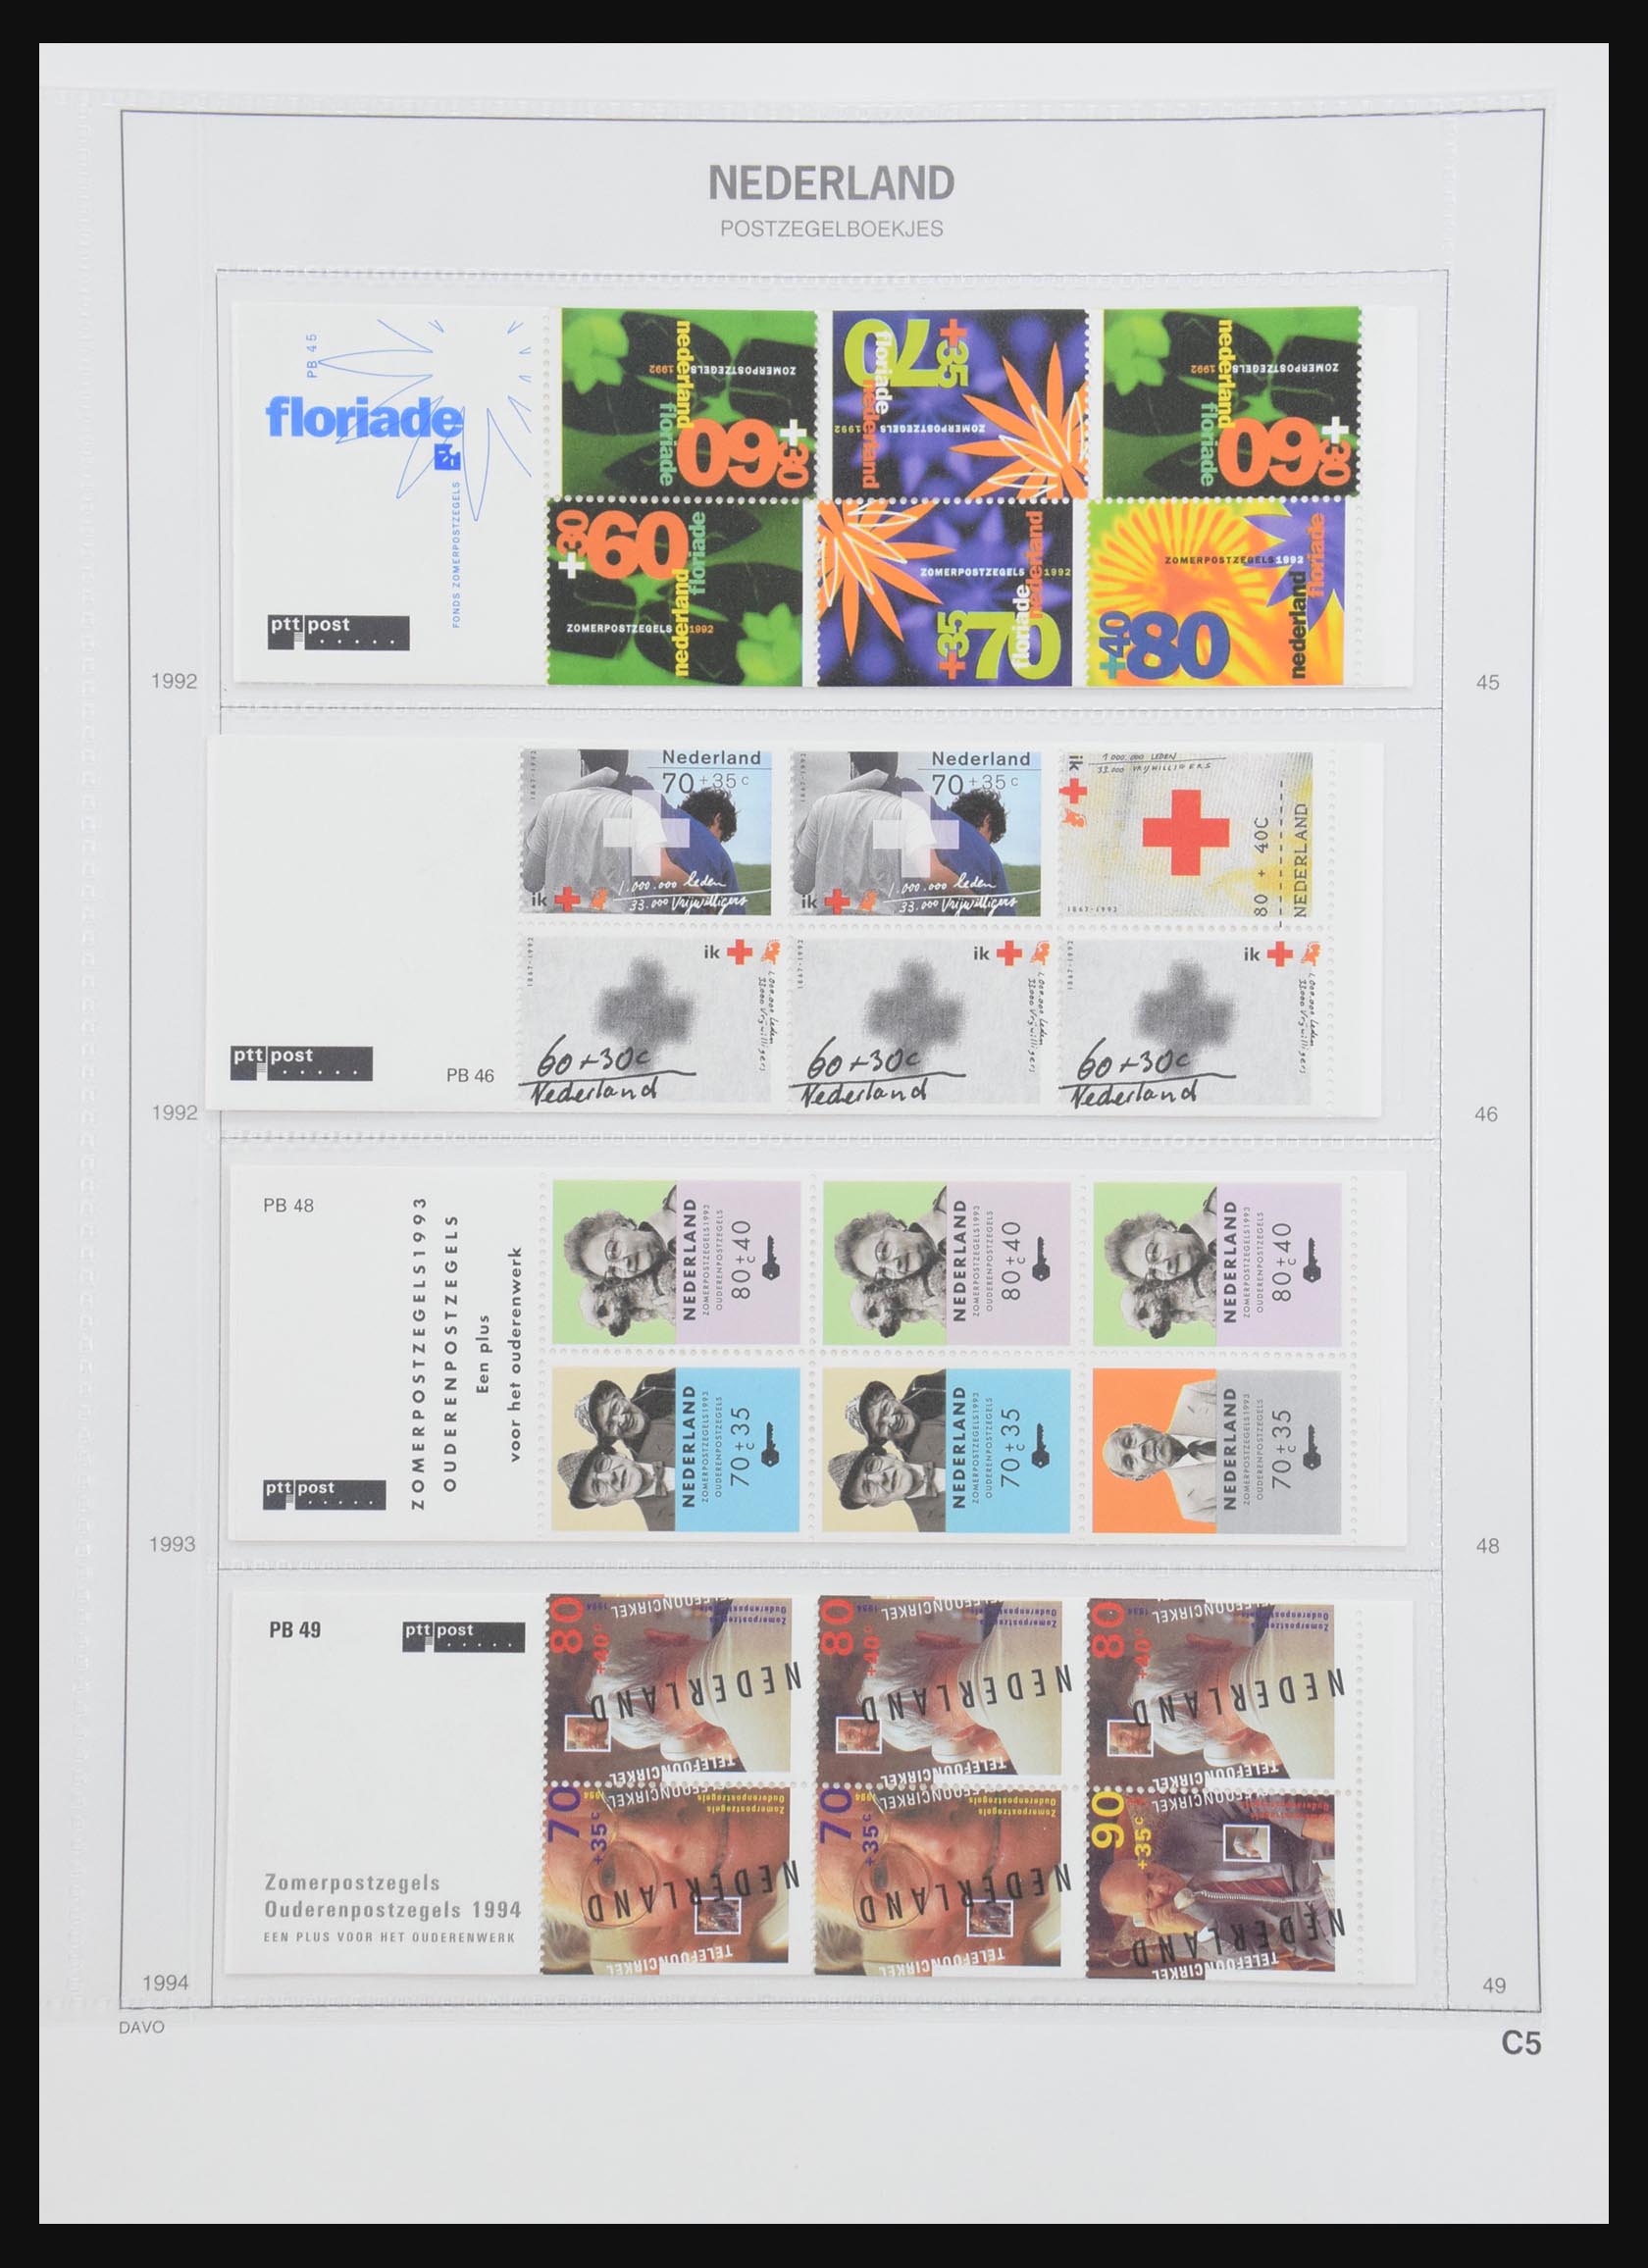 31159 027 - 31159 Netherlands stamp booklets 1964-1994.